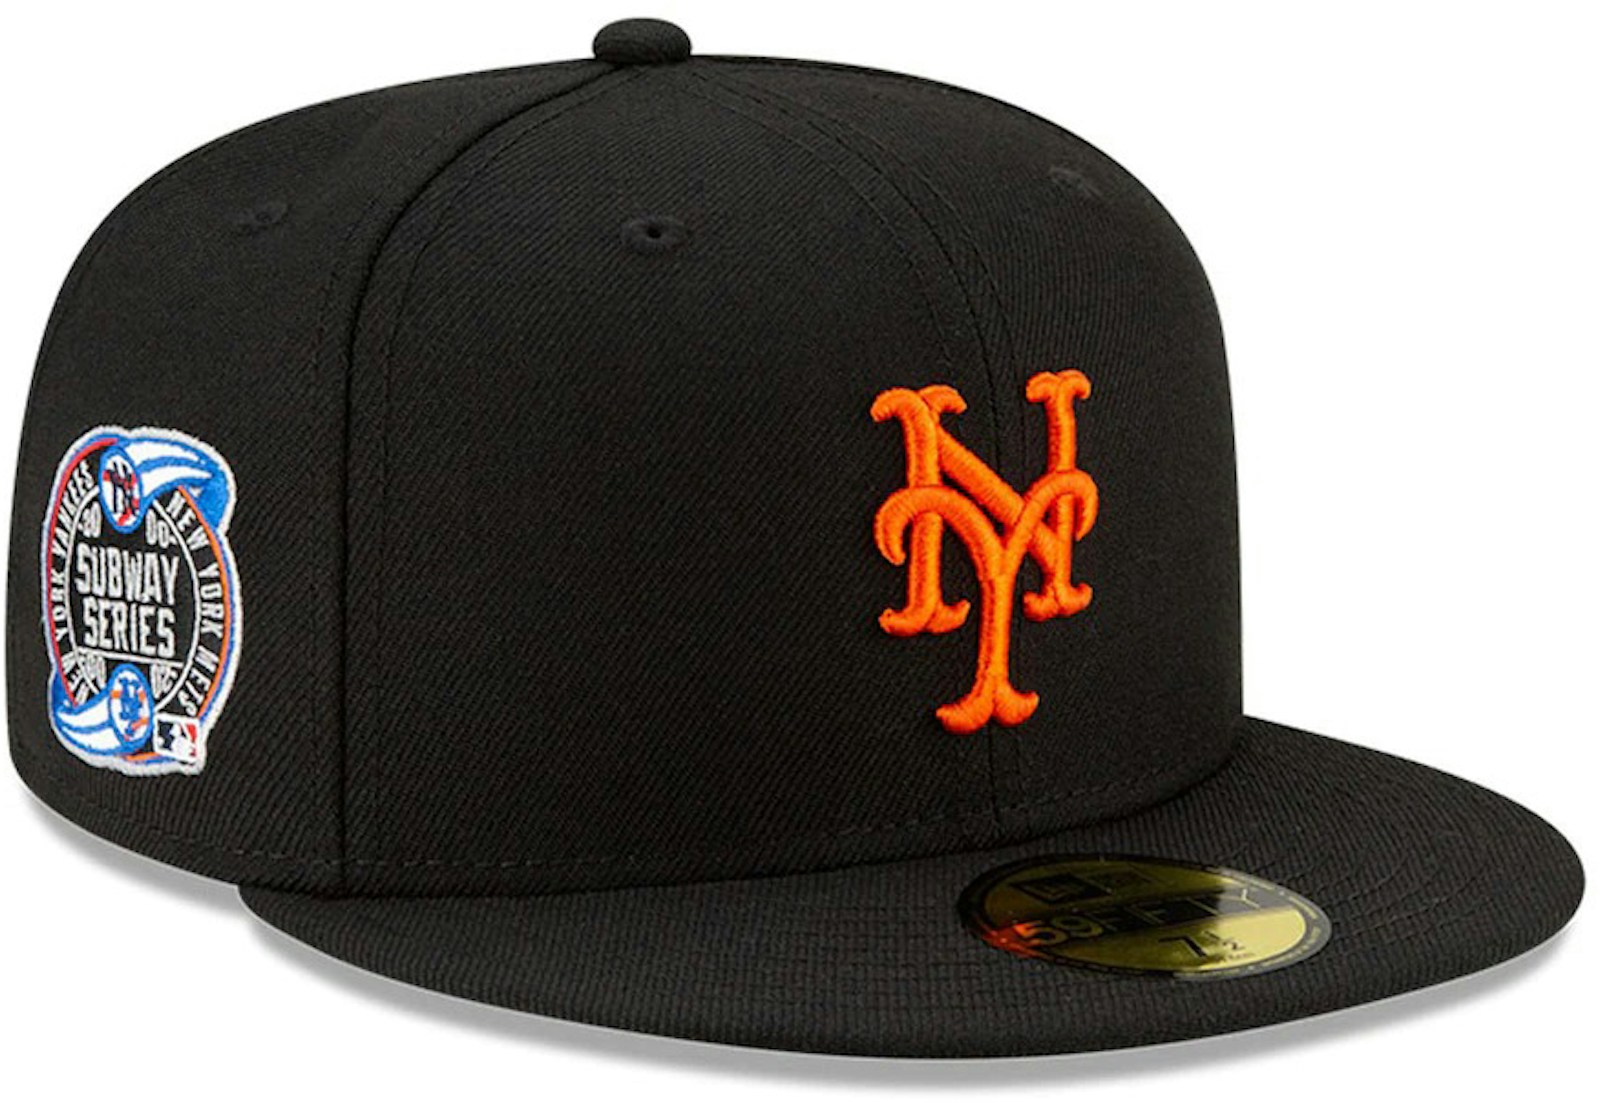 Awake Subway Series New York Mets New Era Fitted Cap Black - SS21